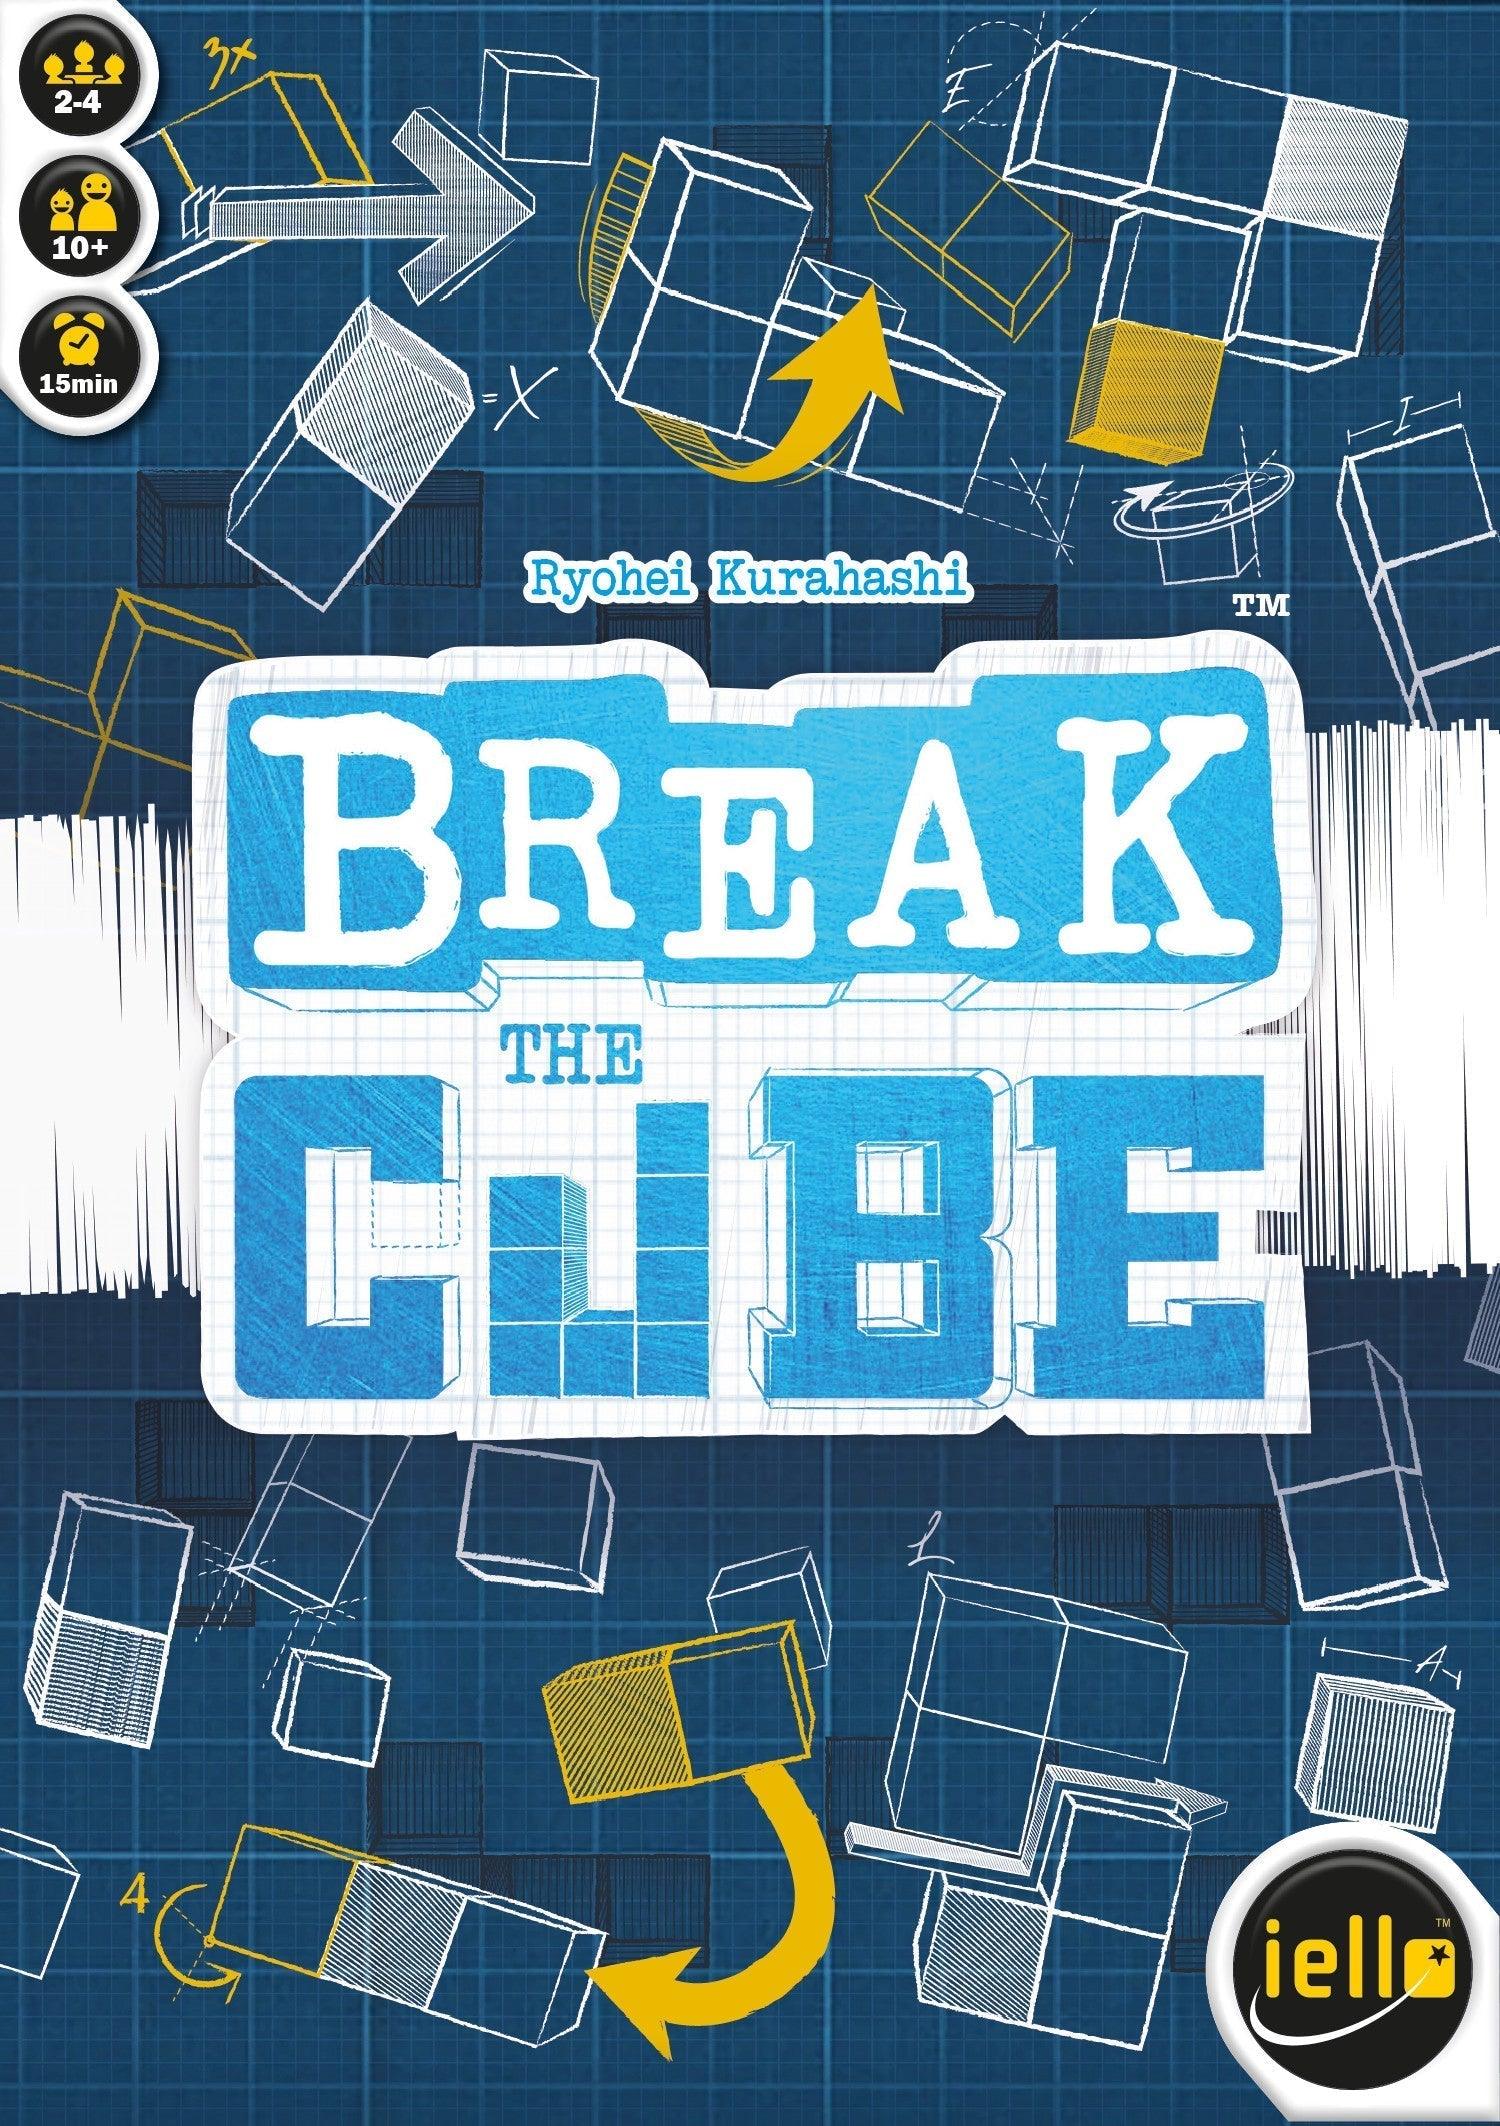 VR-96064 Break the Cube - Iello - Titan Pop Culture